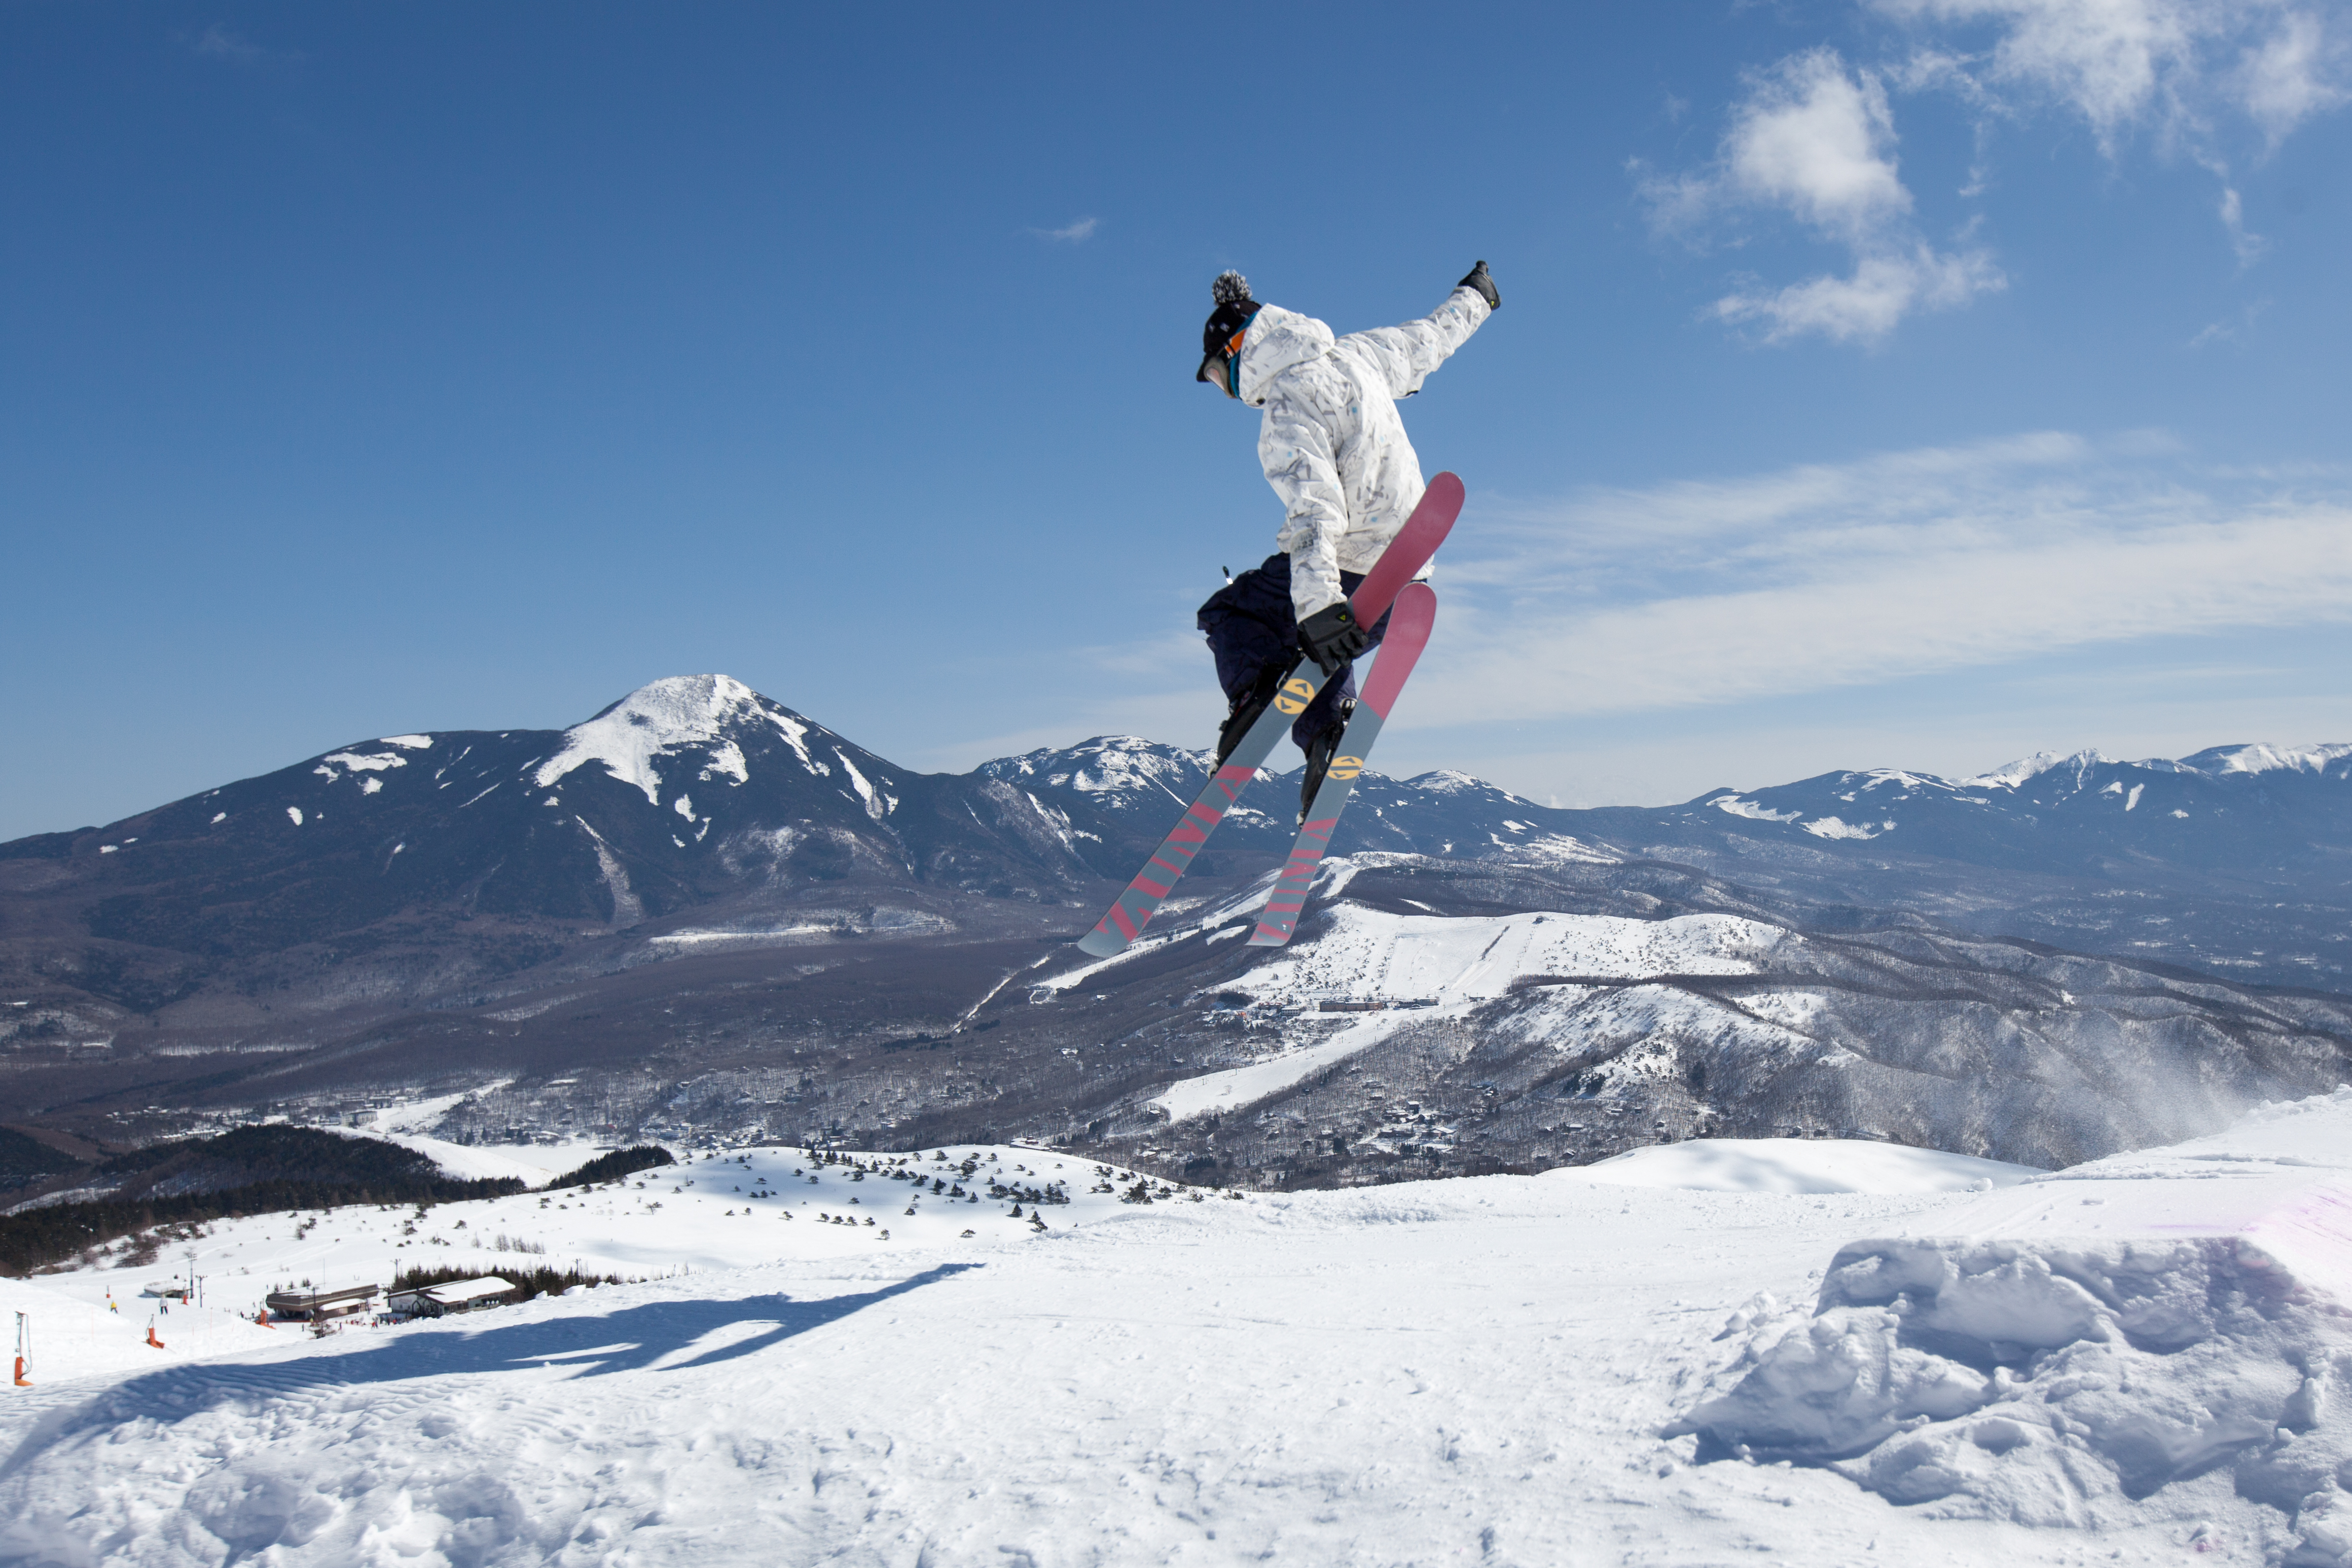 Snow skiing in Nagano